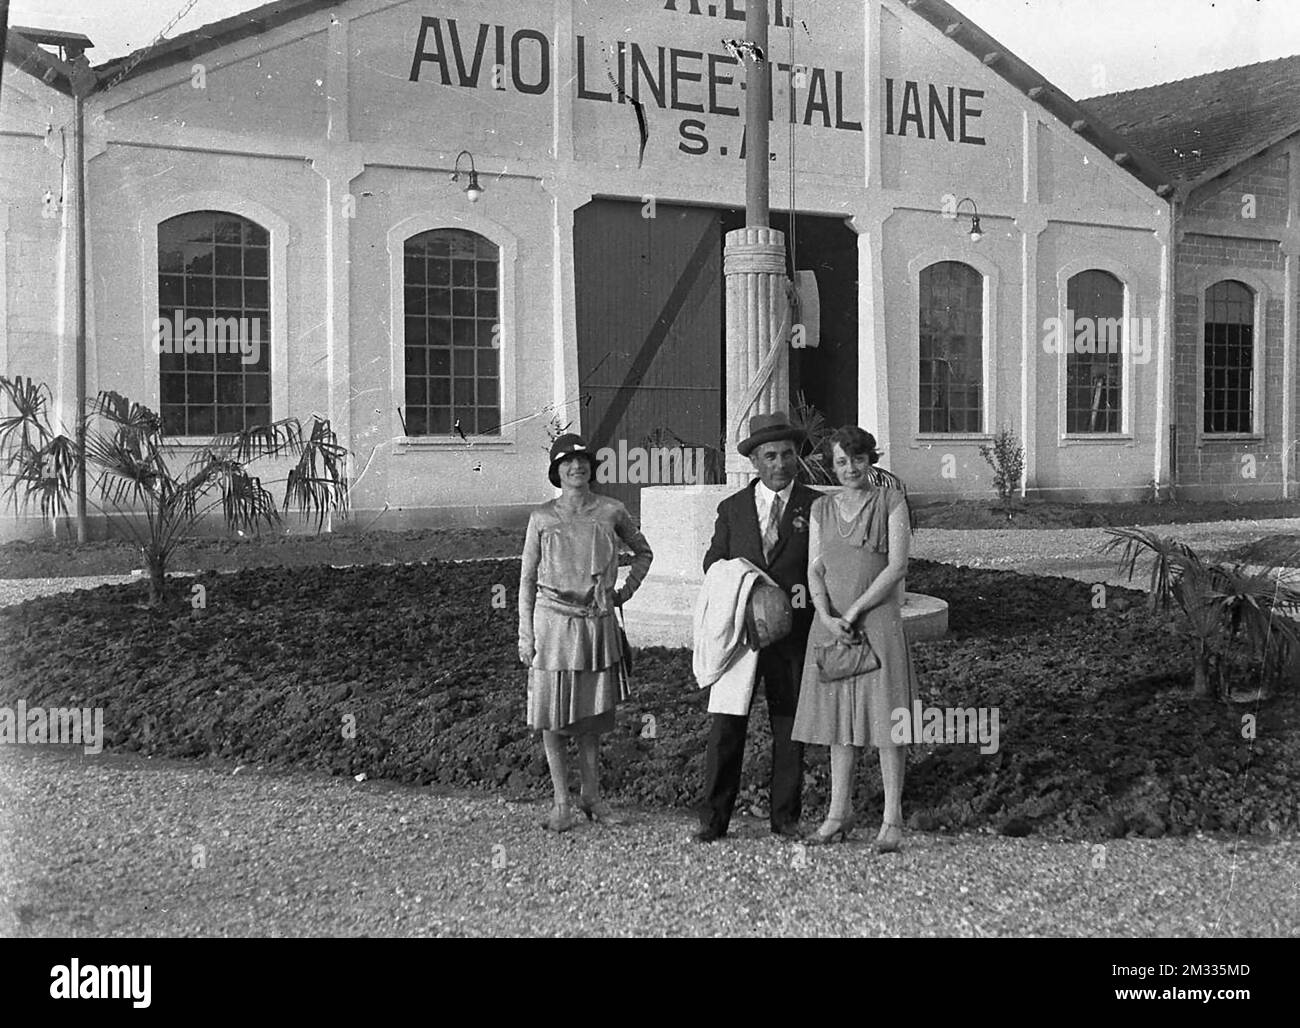 Aeroplani - Avio Linee Italiane, nota anche con la sigla ALI, è stata una compagnia aerea italiana di navigazione aerea attiva principalmente nella prima parte del XX secolo. Banque D'Images